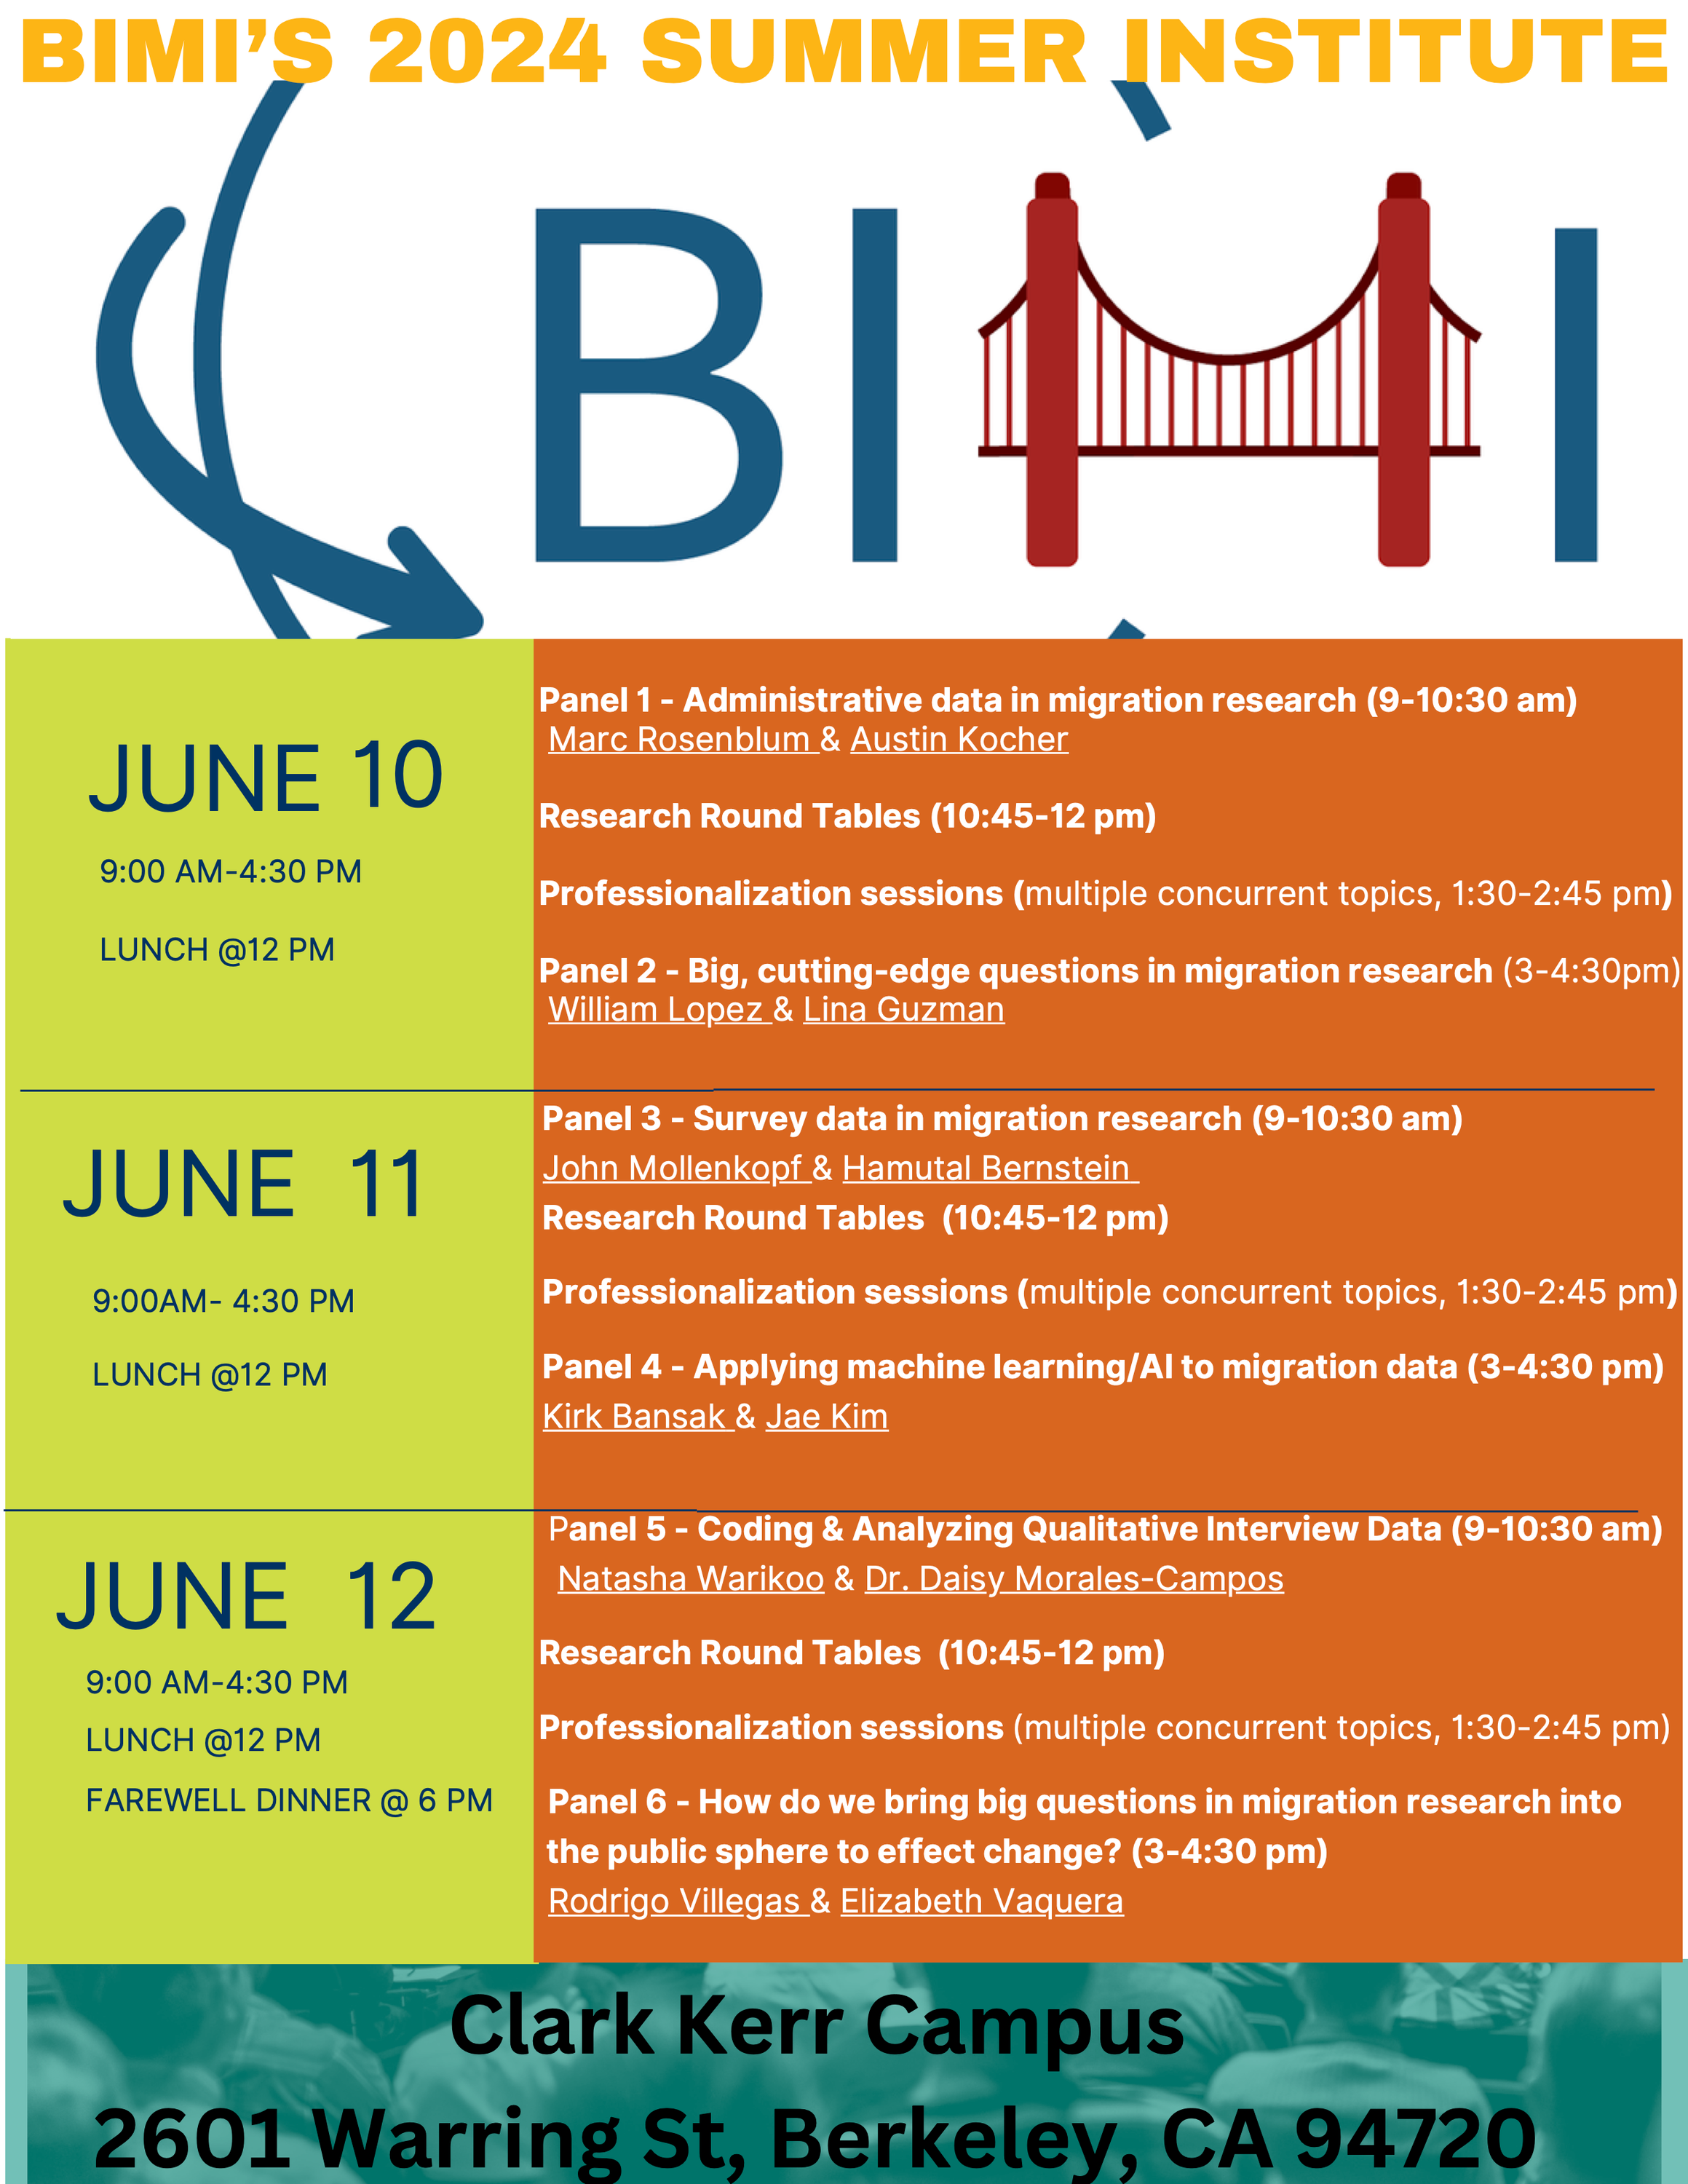 BIMI Summer Institute Speaker Line-up.